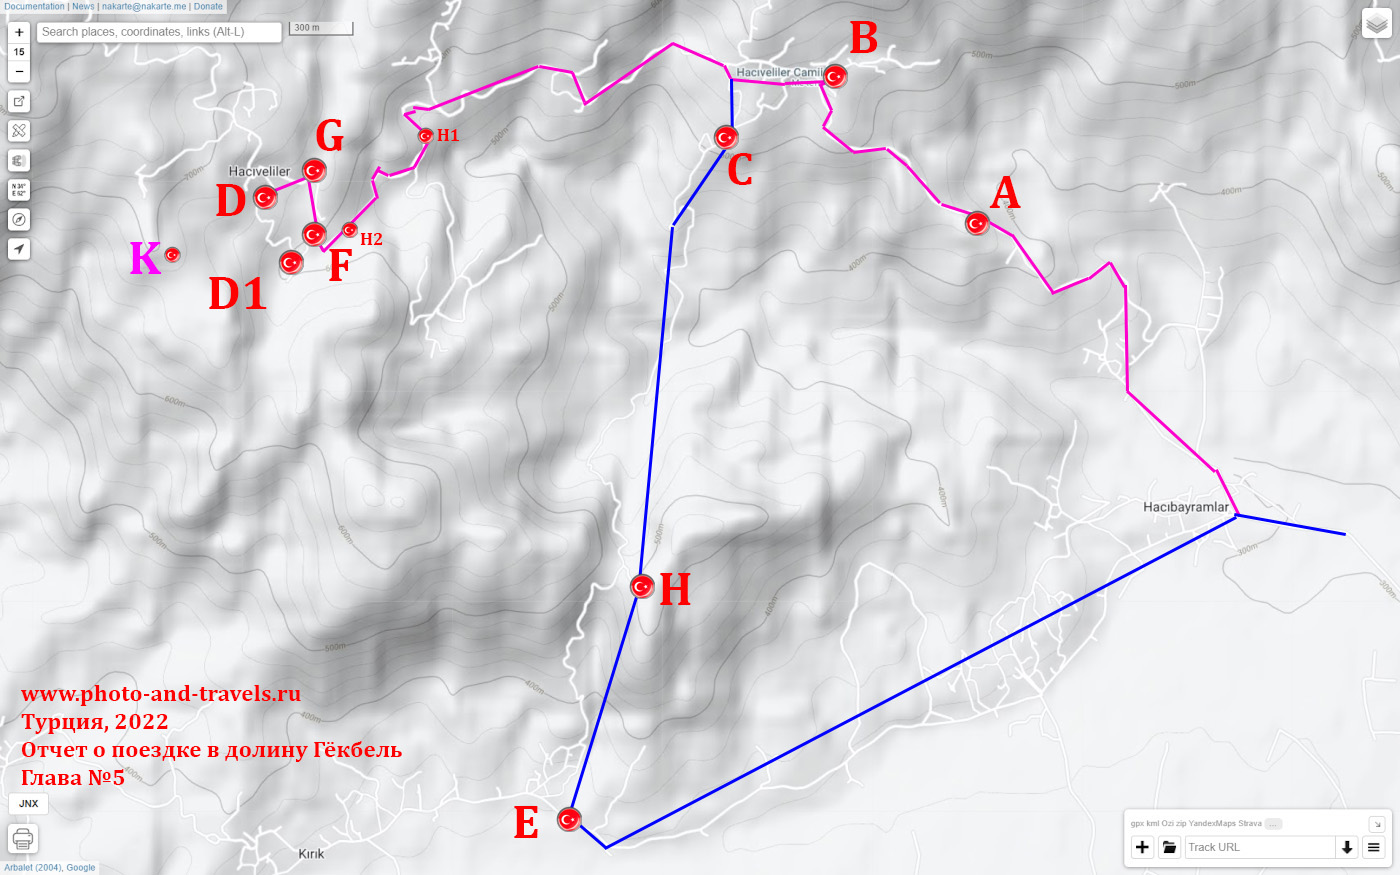 2. Карта со схемой расположения смотровых площадок в долине Гёкбель.